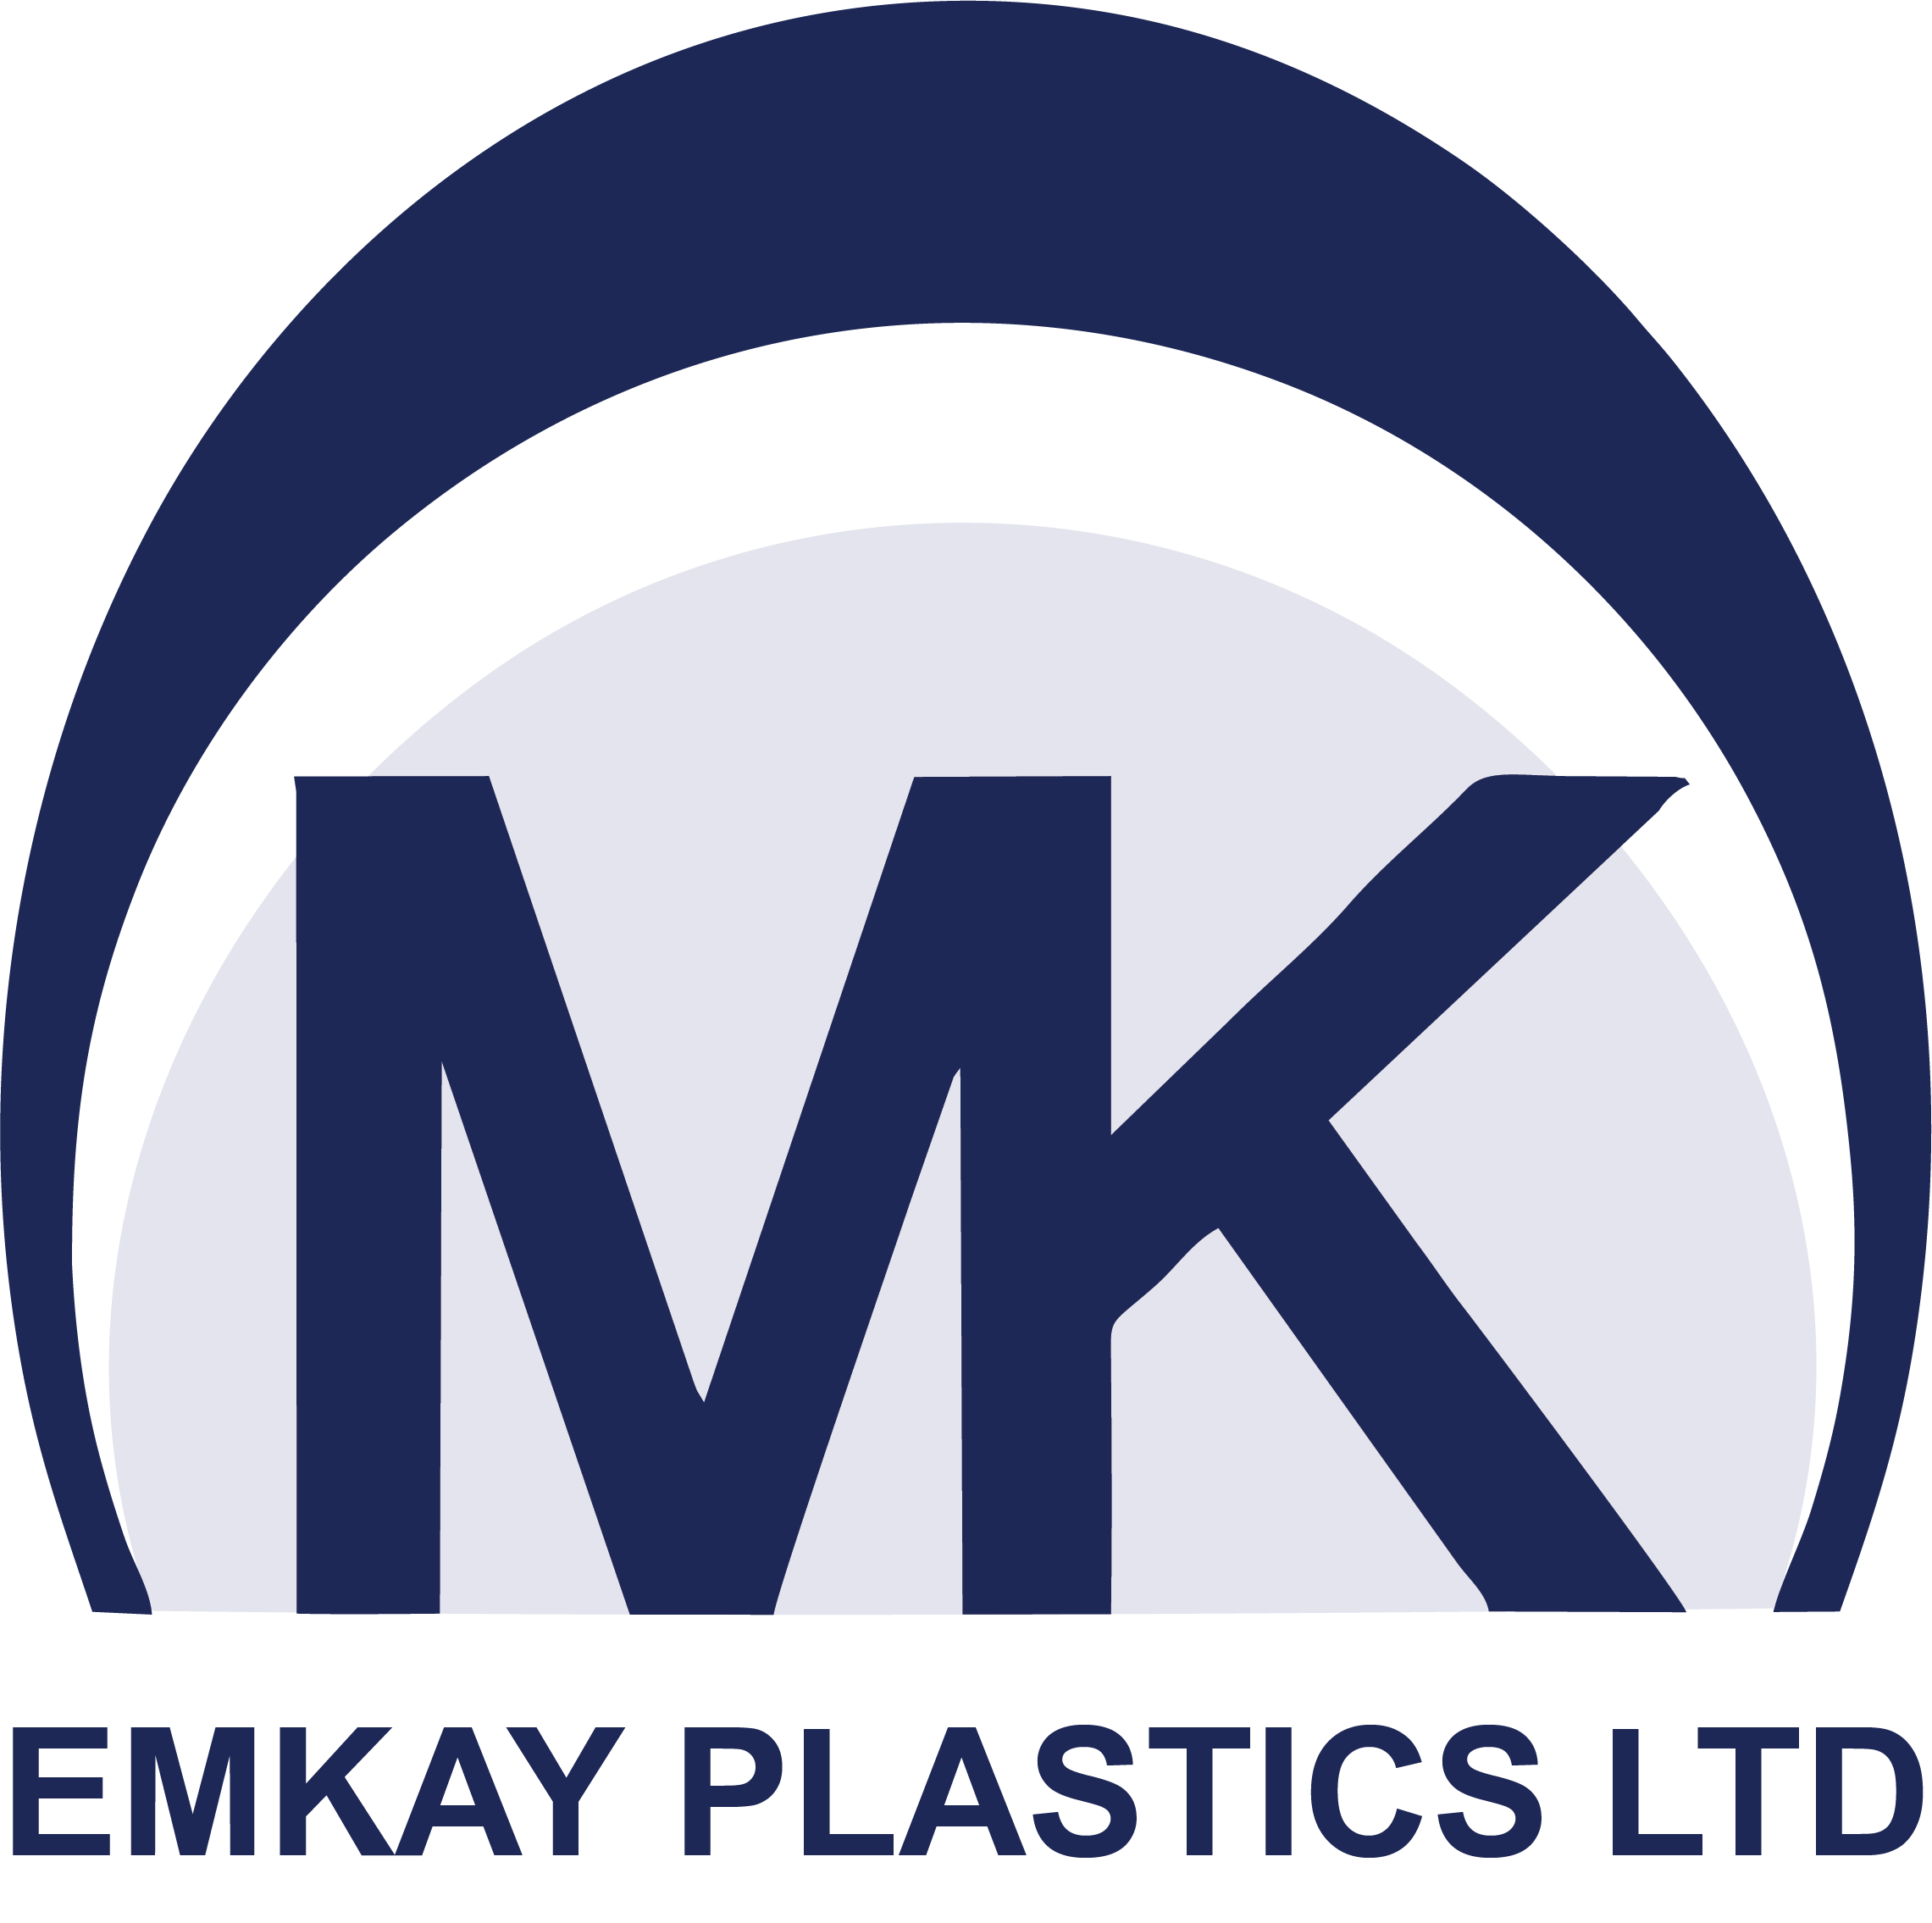 Emkay Plastics Ltd